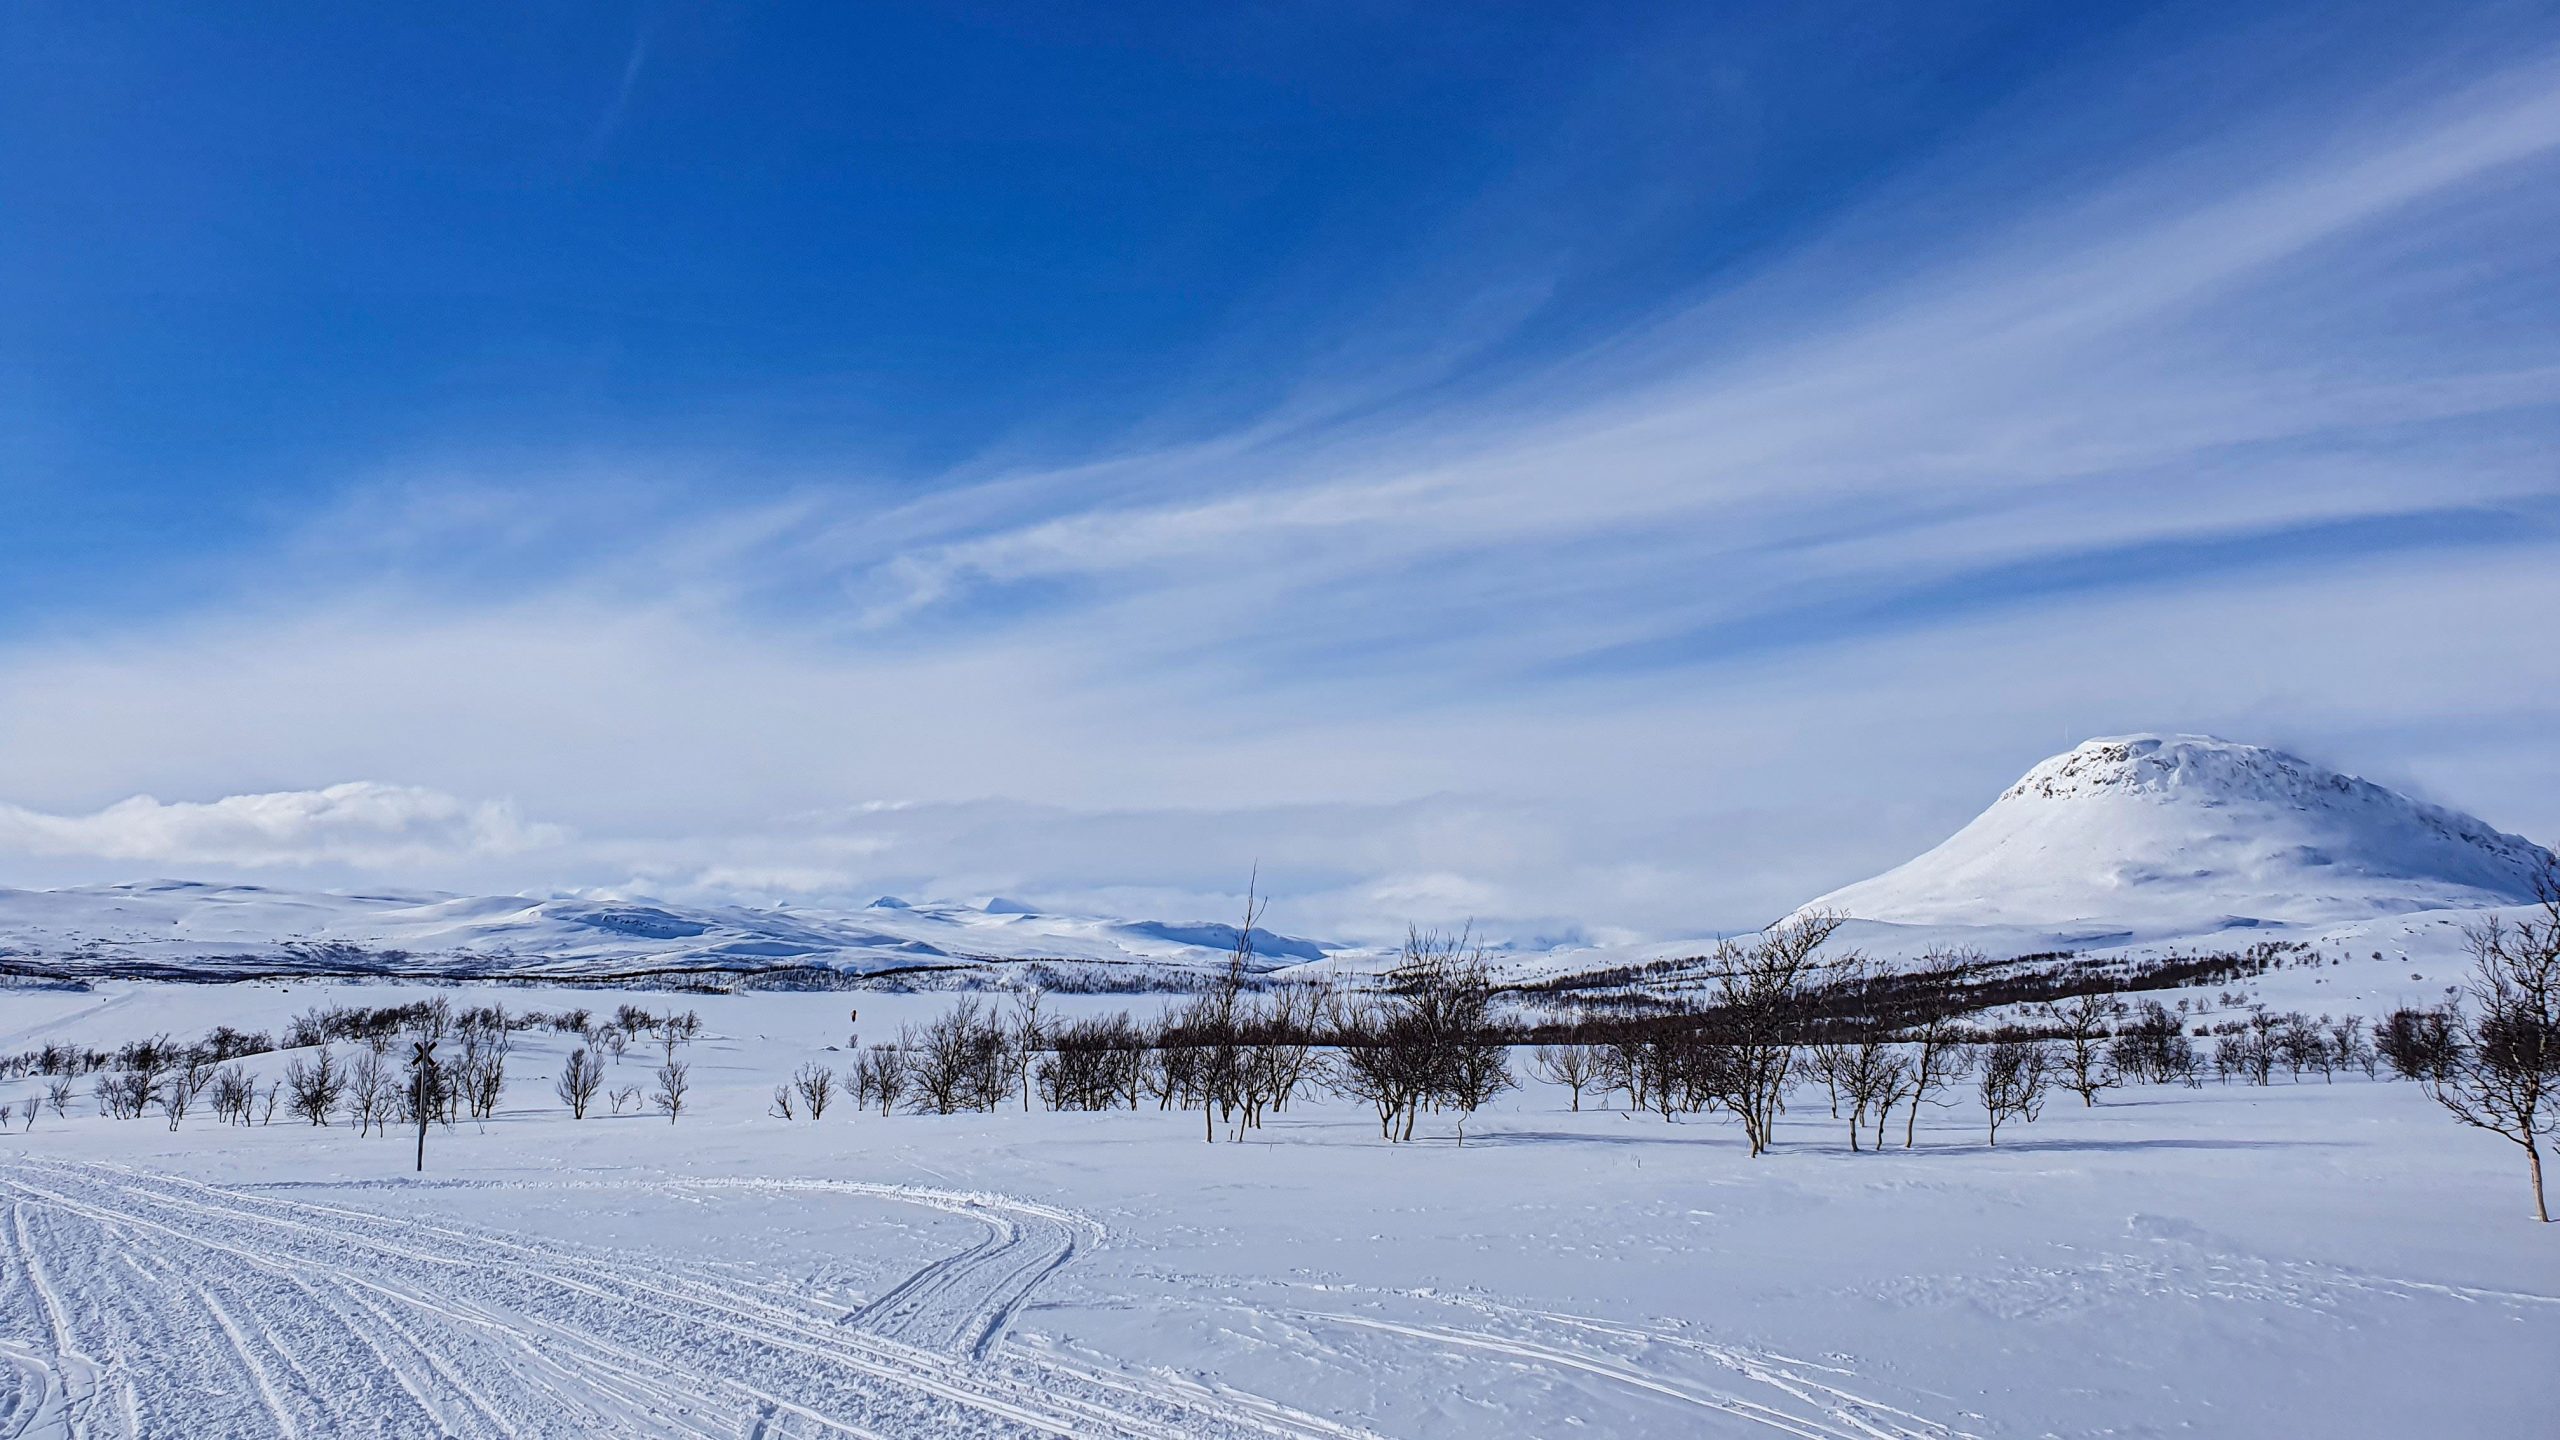 Kilpisjärvi snow scenery in northern Lapland Finland, picture by Luisa Schaffner